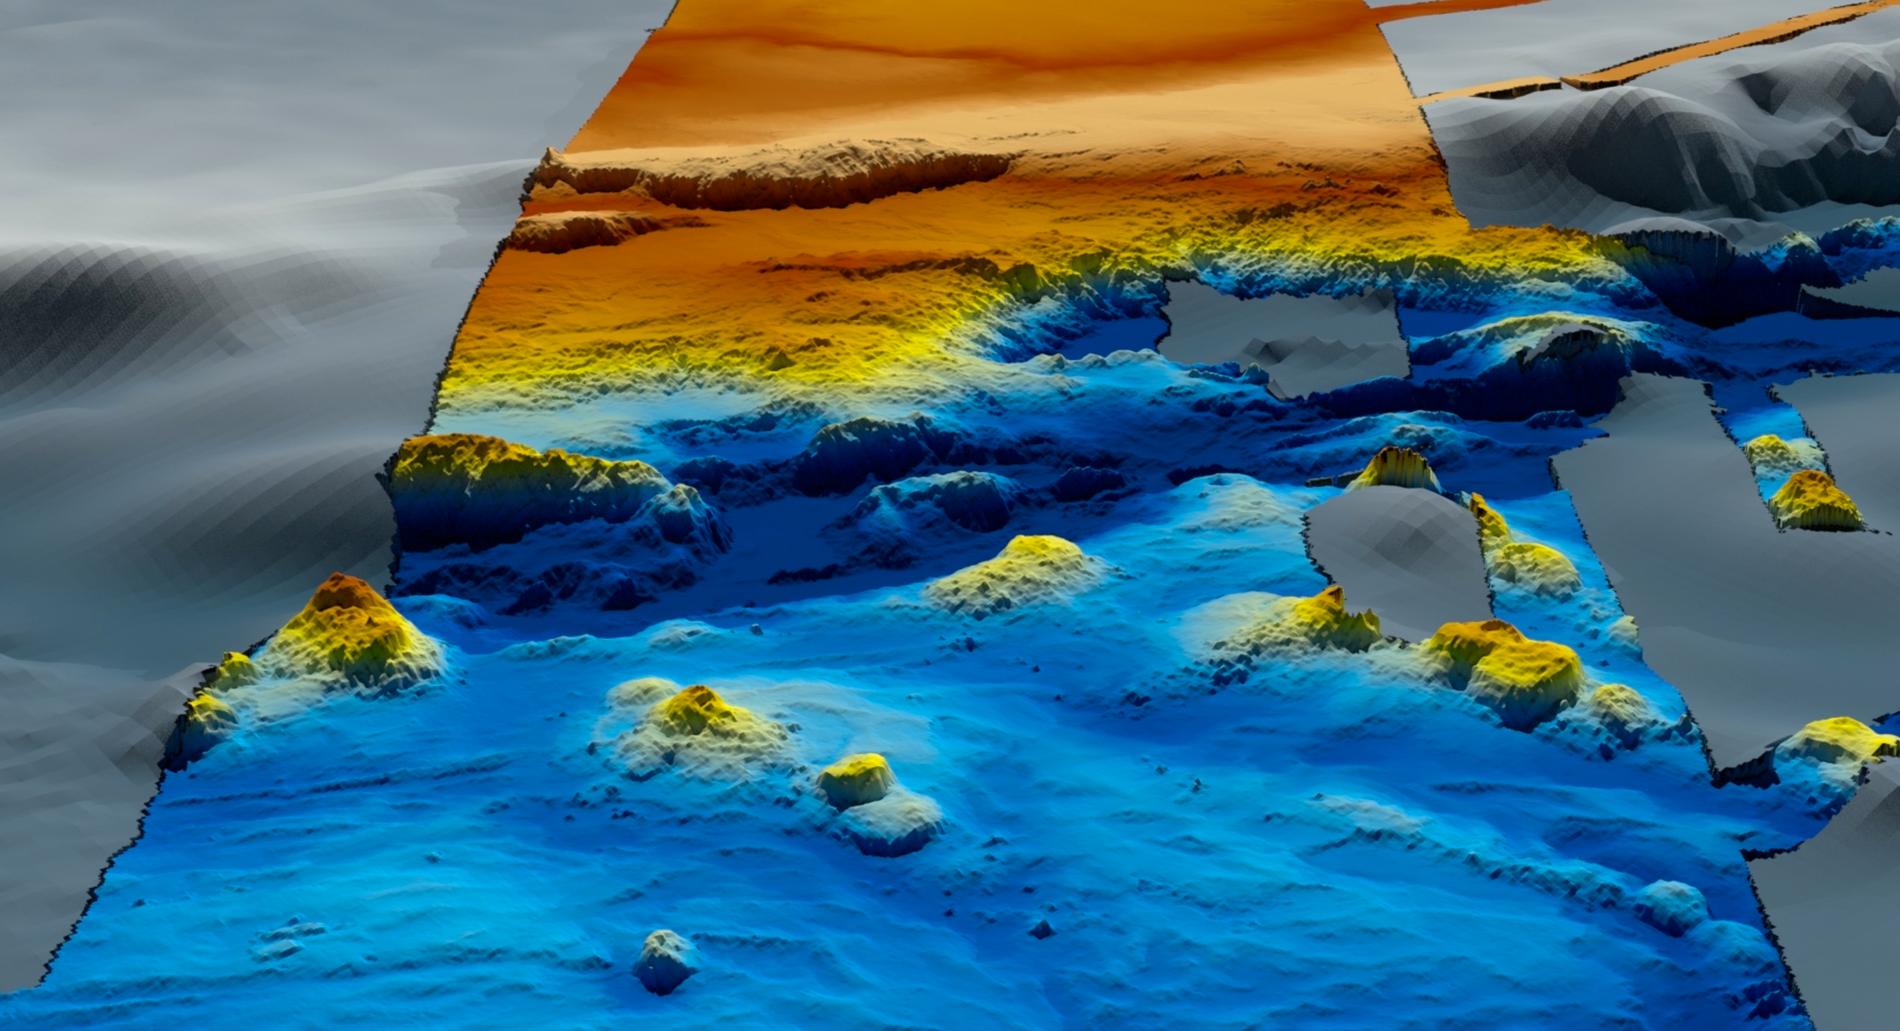 Detaljerade topografiska kartor över havsbotten har kunnat göras efter sökarbetet